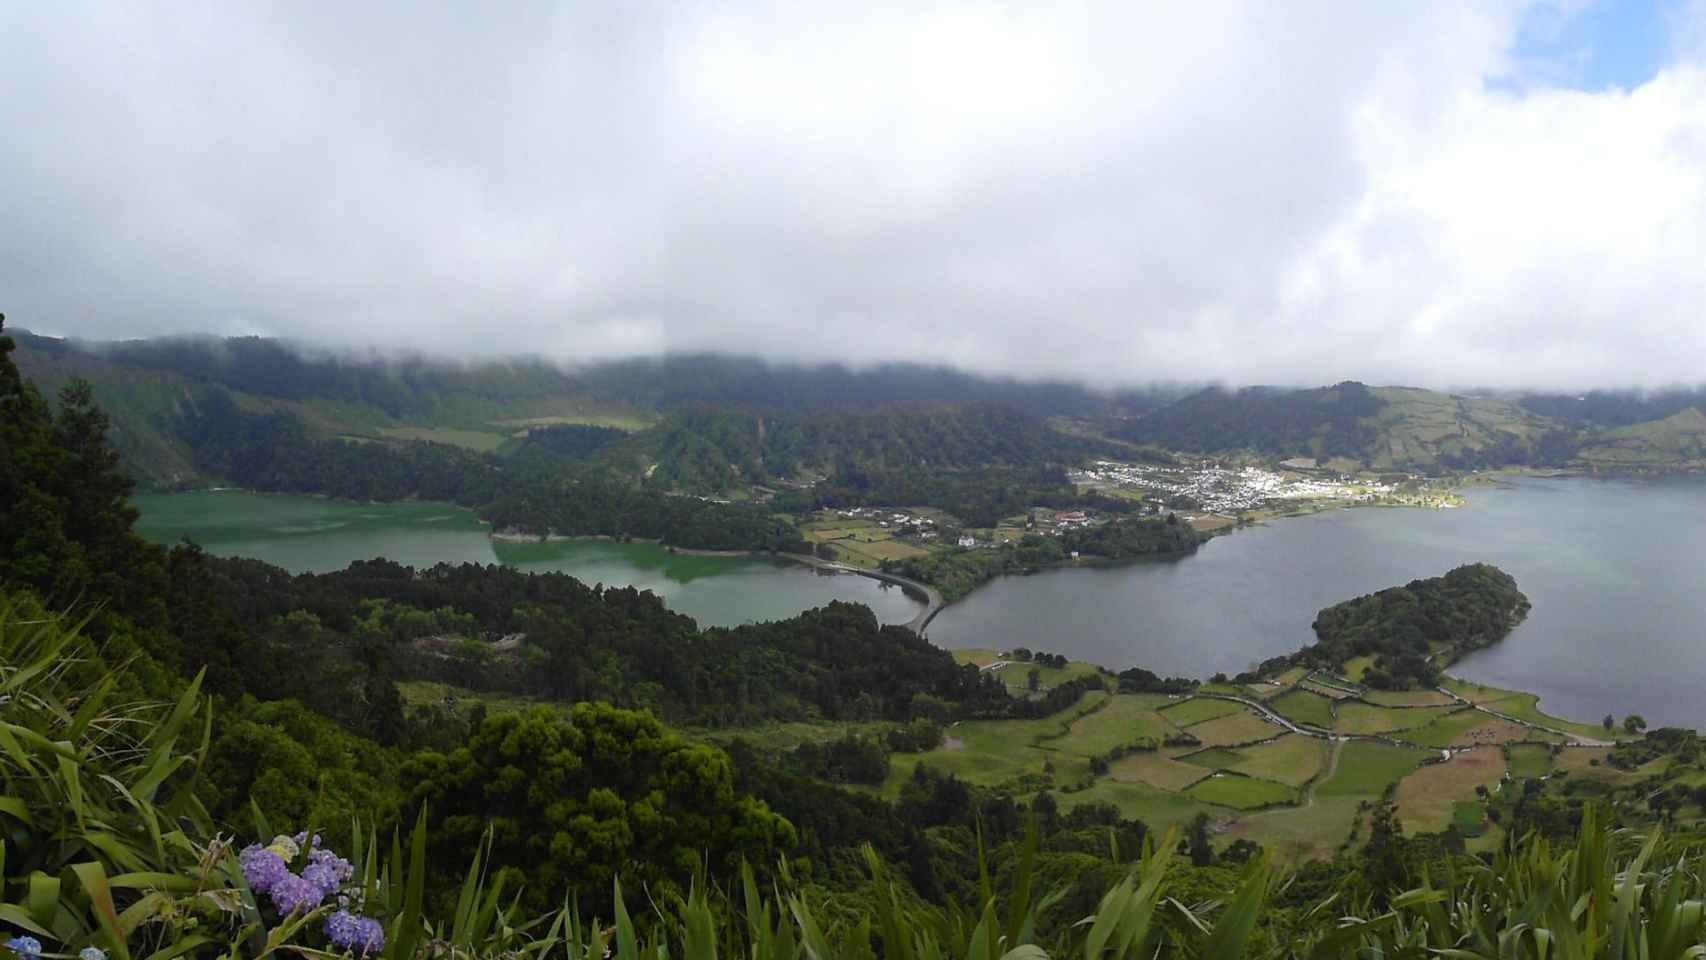 Las lagunas verde y azul en el paraje protegido Sete Cidades, Azores / YOLANDA CARDO